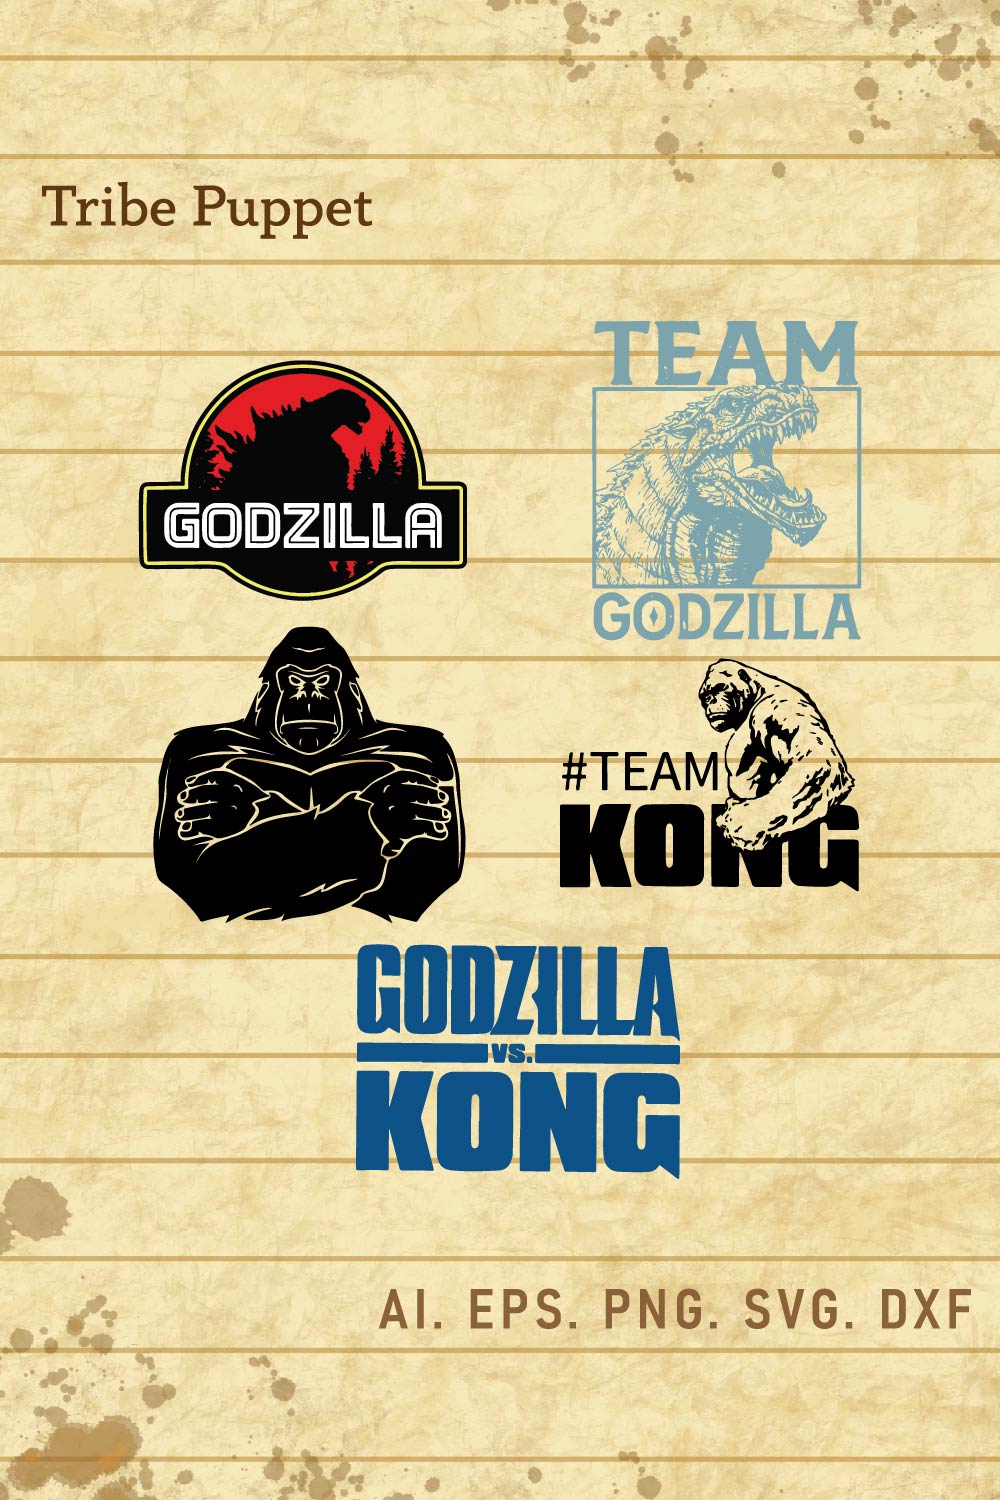 Kingkong vs Godzilla Vector pinterest preview image.